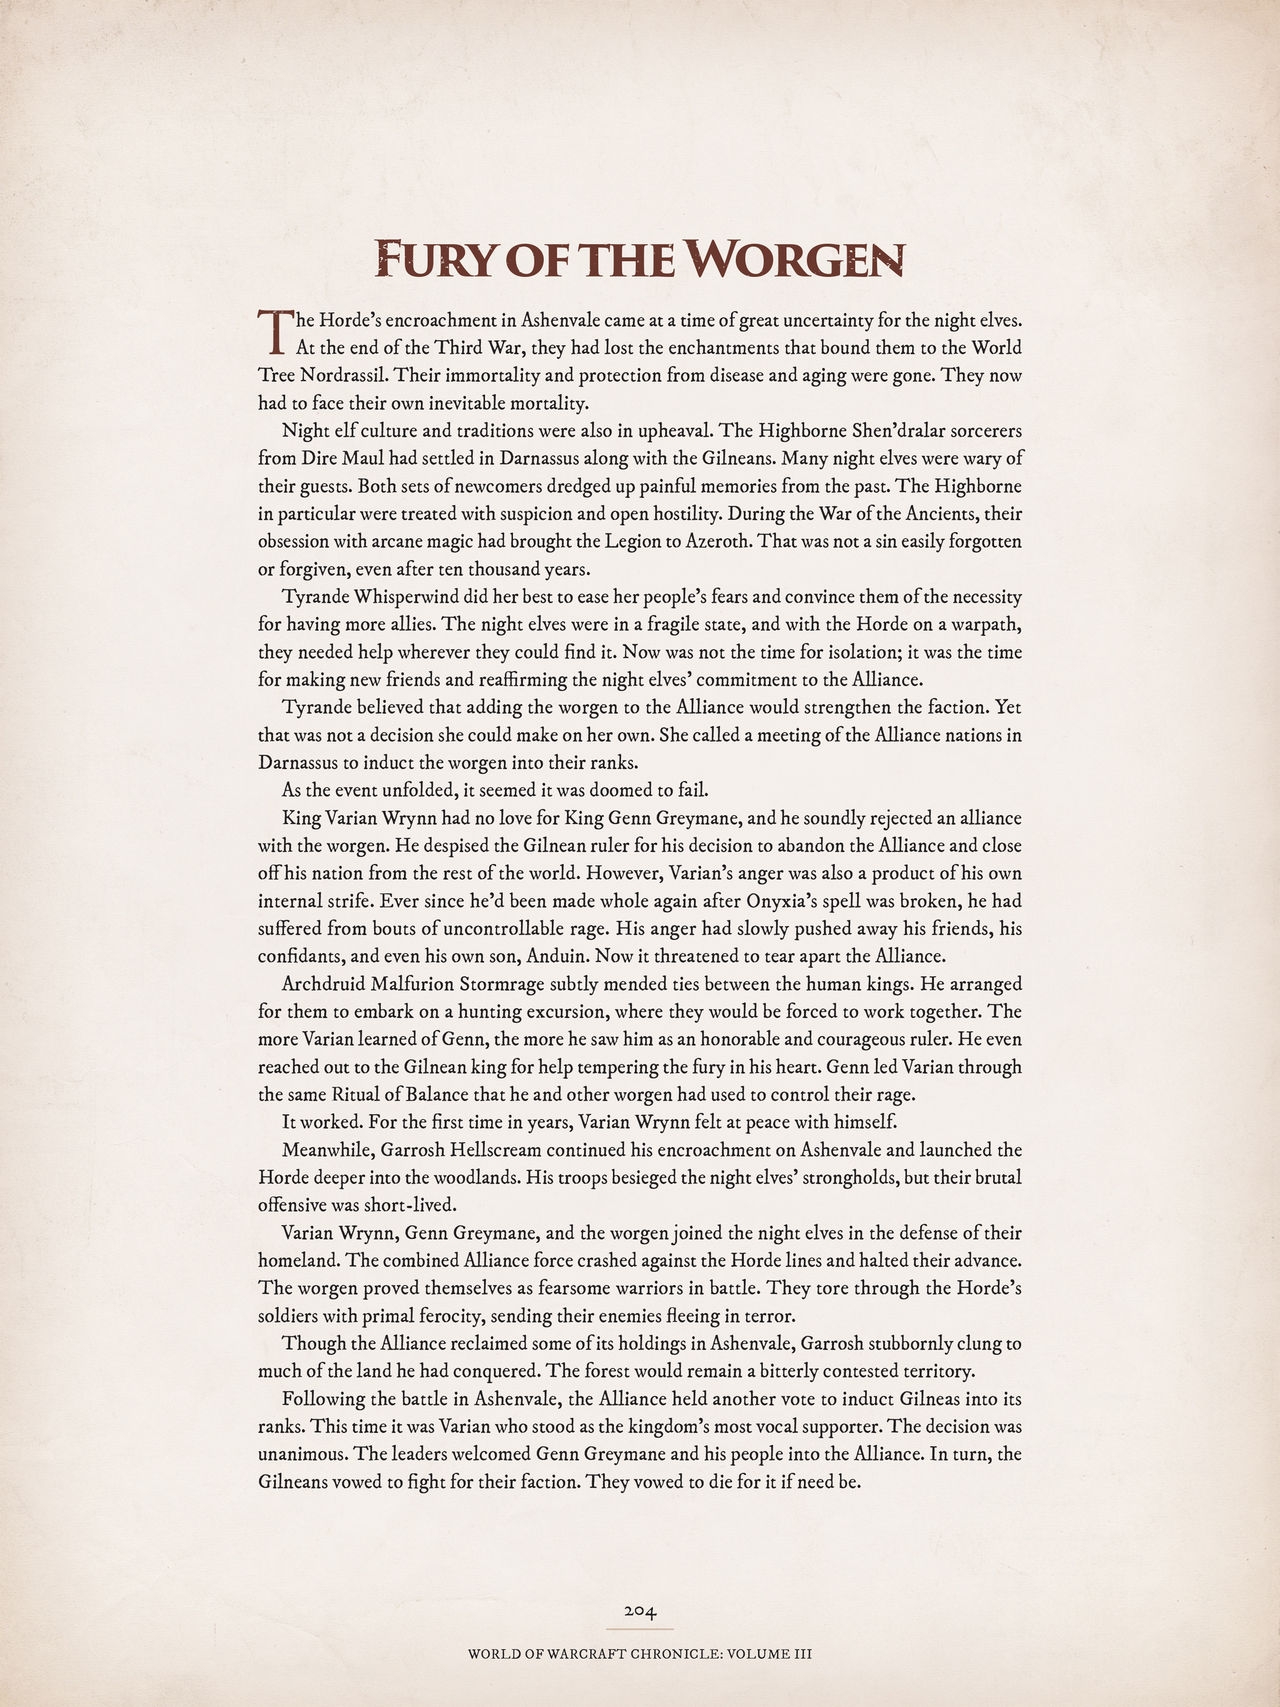 World of Warcraft Chronicle Volume III 194